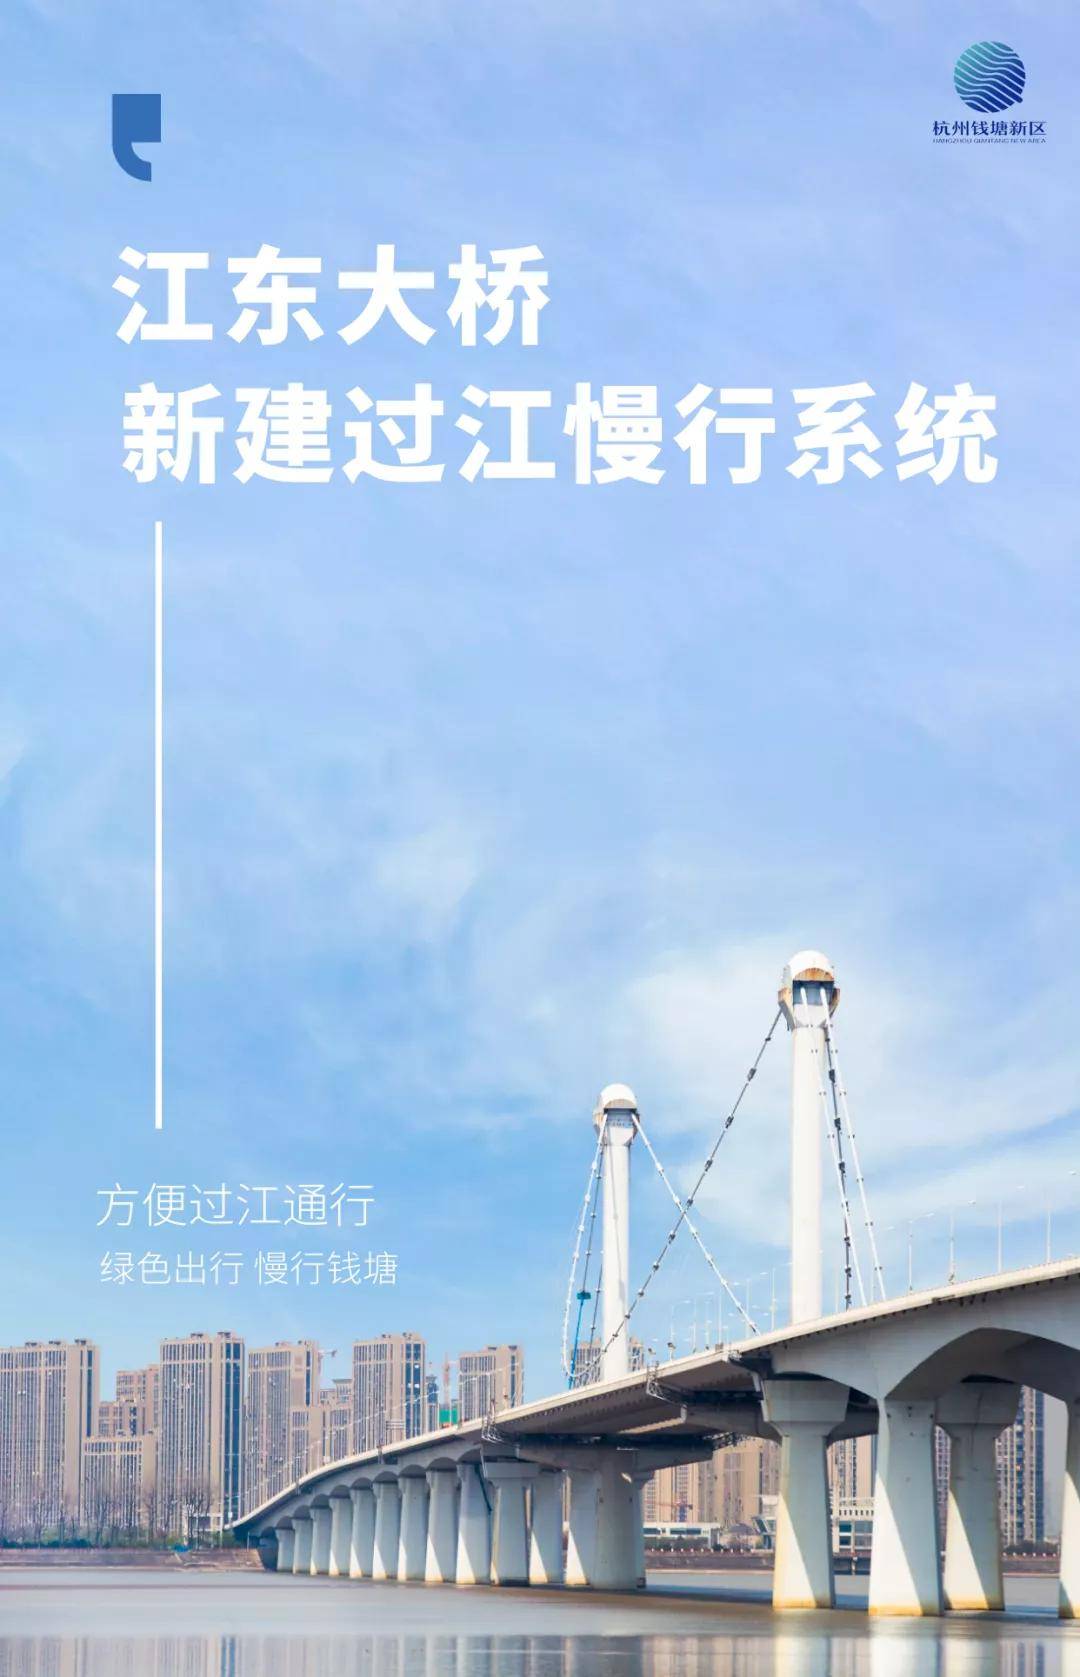 工期7个月!江东大桥过江慢行交通系统工程施工招标文件发布!